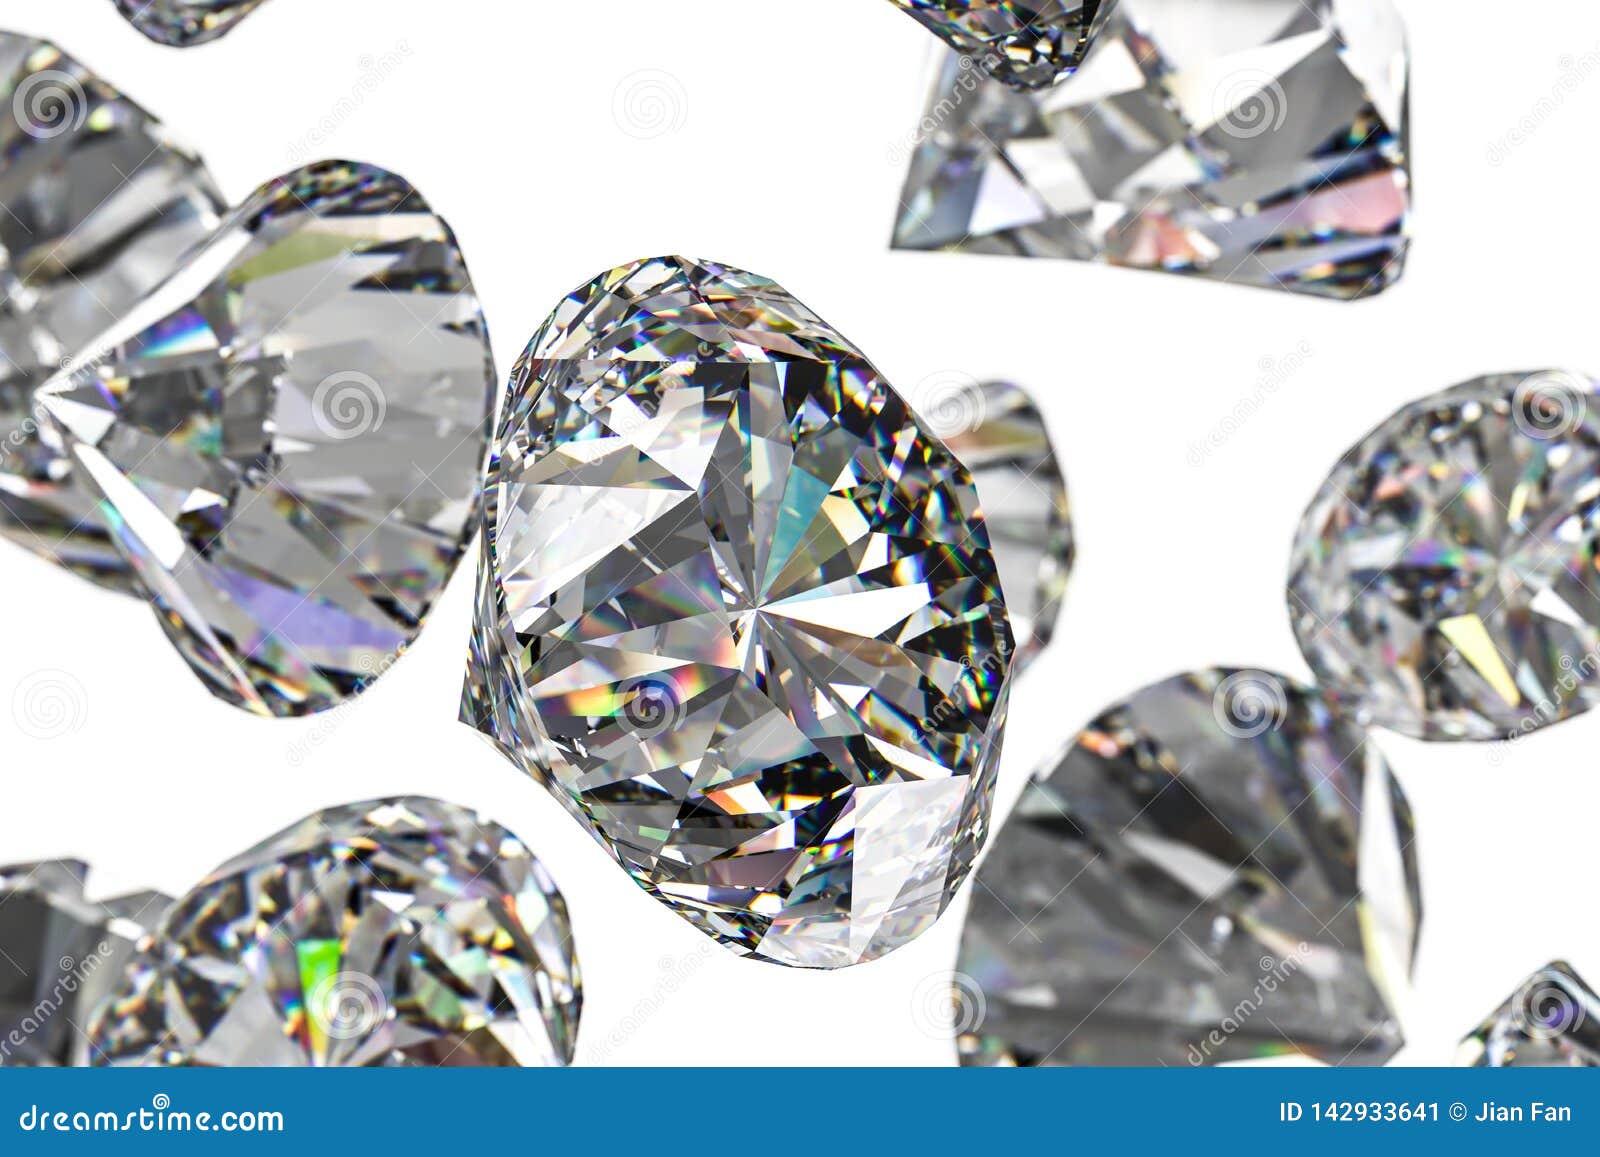 Những viên kim cương sang trọng luôn làm chúng ta say đắm với vẻ đẹp quý giá. Hãy chiêm ngưỡng hình ảnh được chụp cận cảnh của những viên kim cương tuyệt đẹp này để cảm nhận thêm sức hút của chúng. 